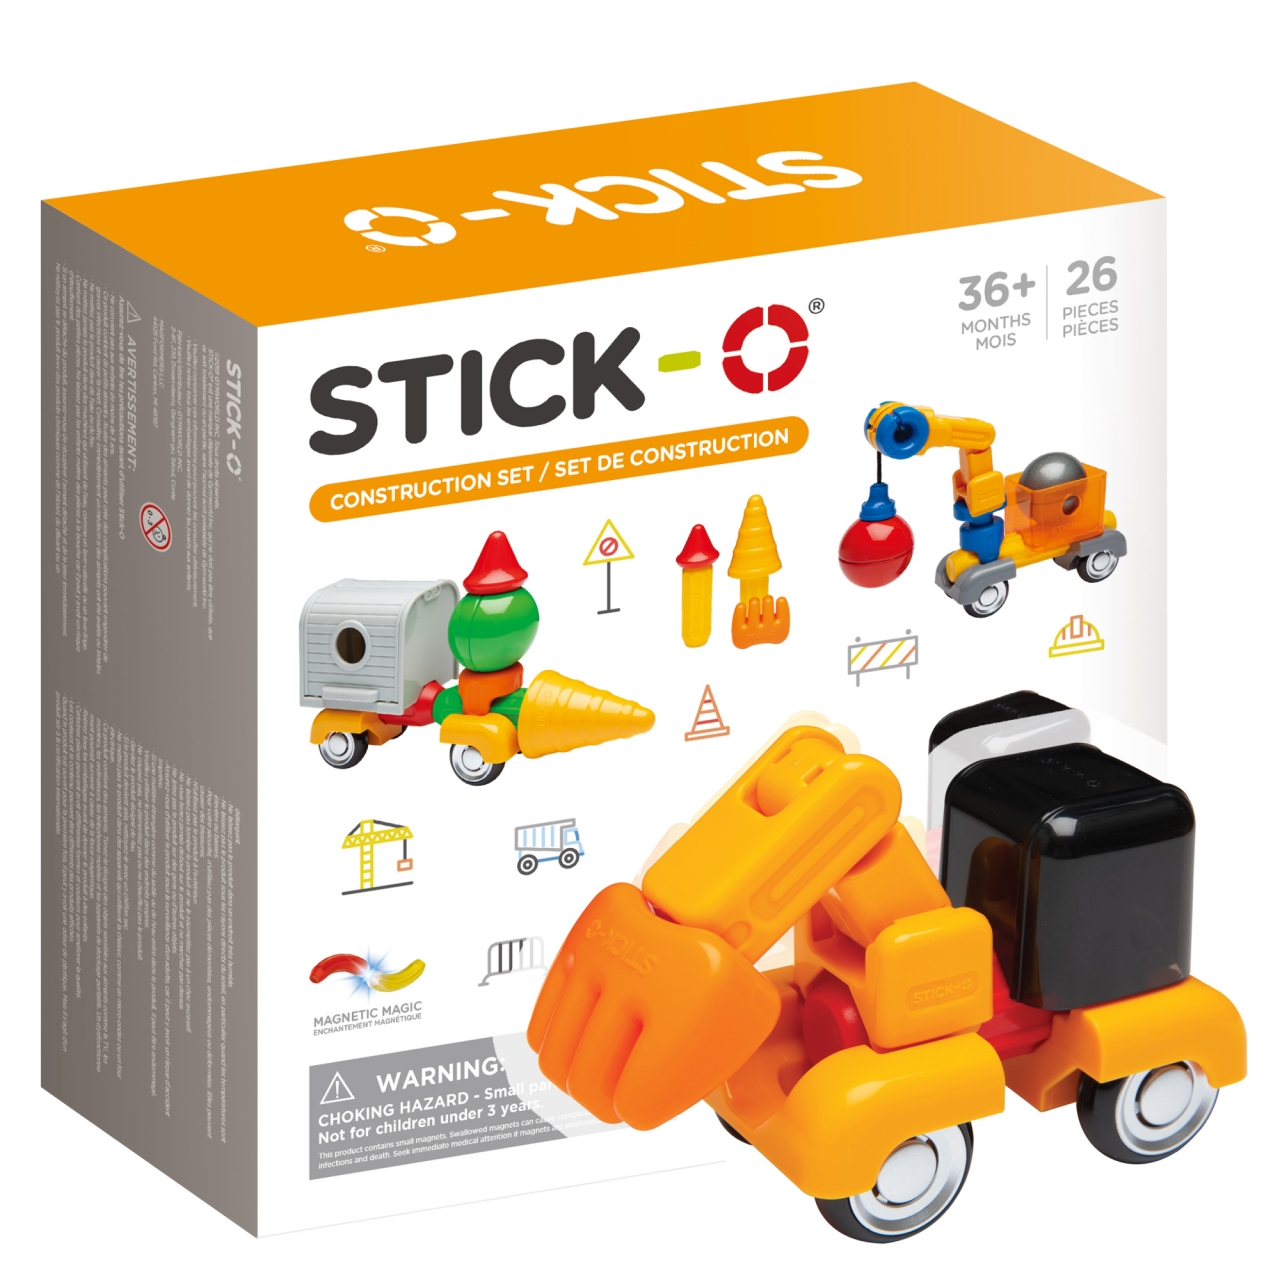 Конструктор магнитный STICK-O Construction Set, 26 деталей (спецтехника)